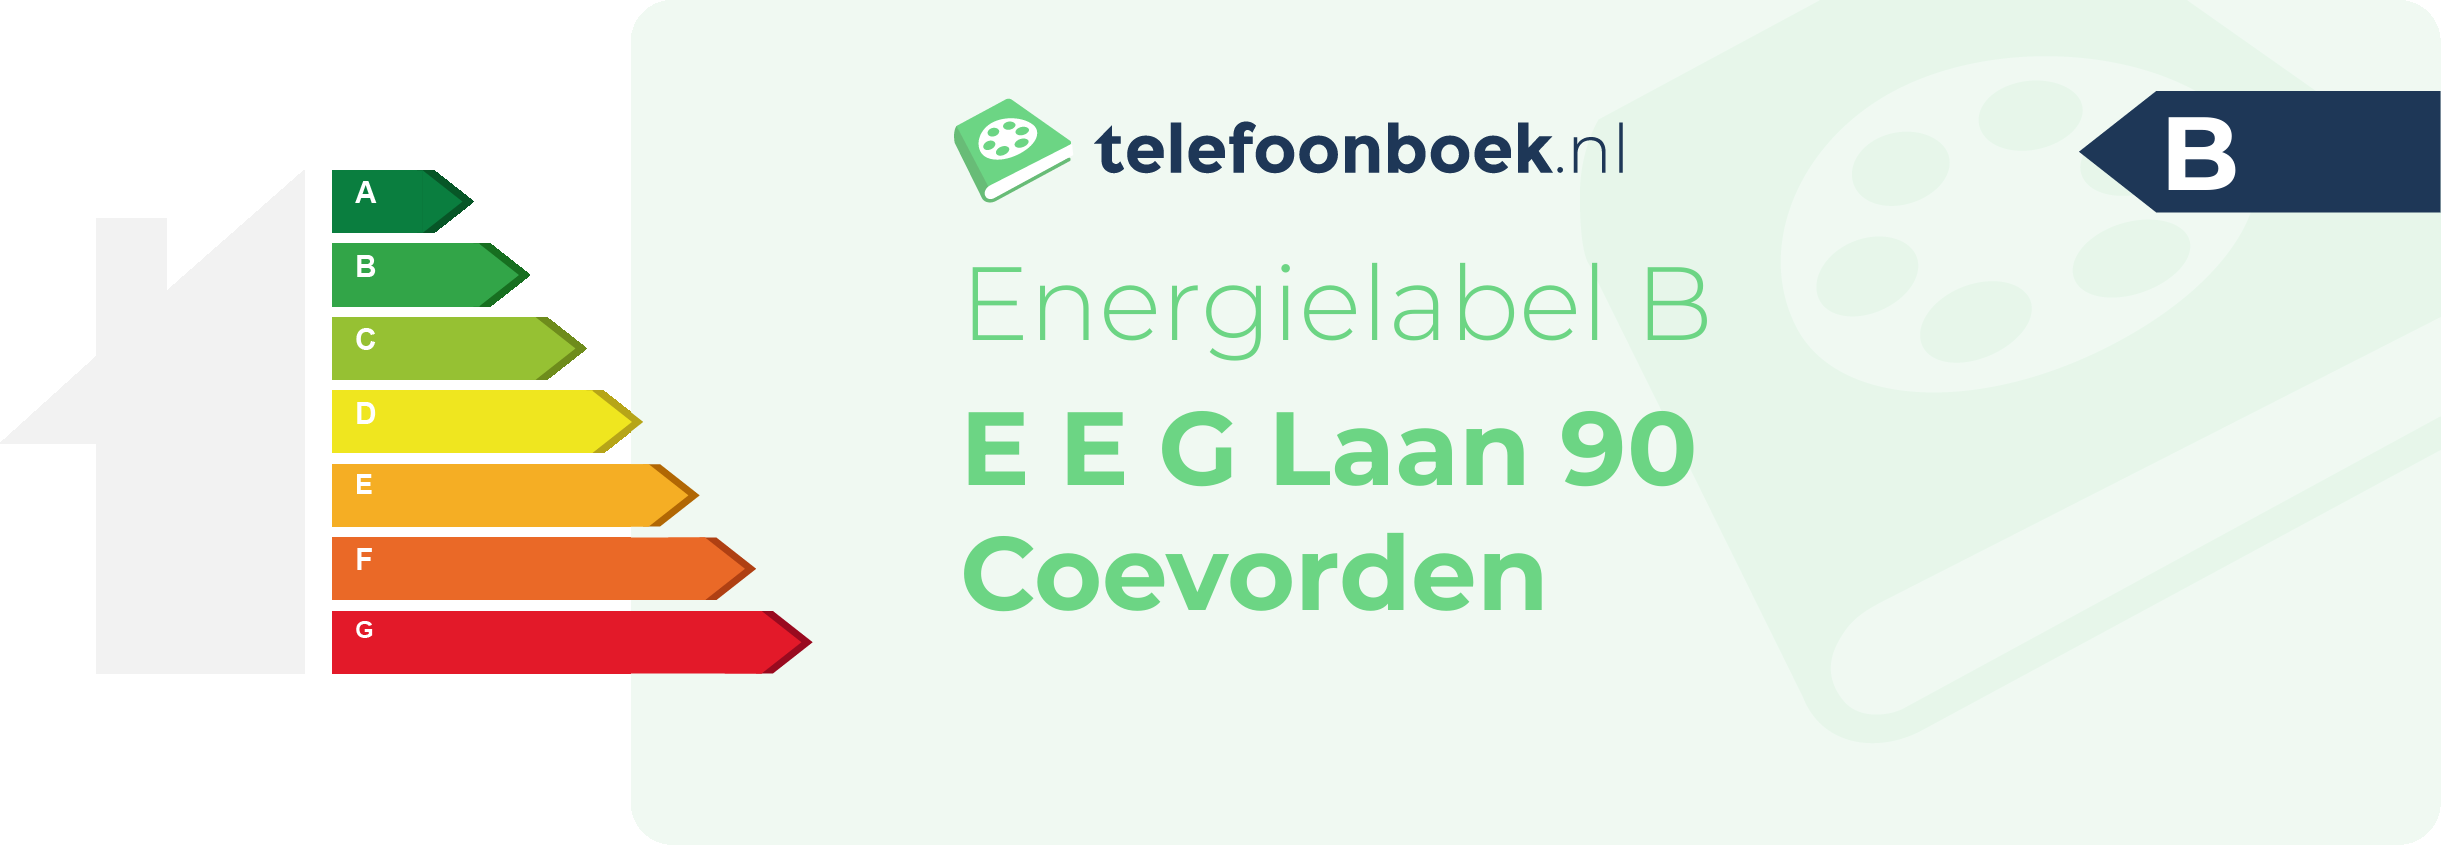 Energielabel E E G Laan 90 Coevorden